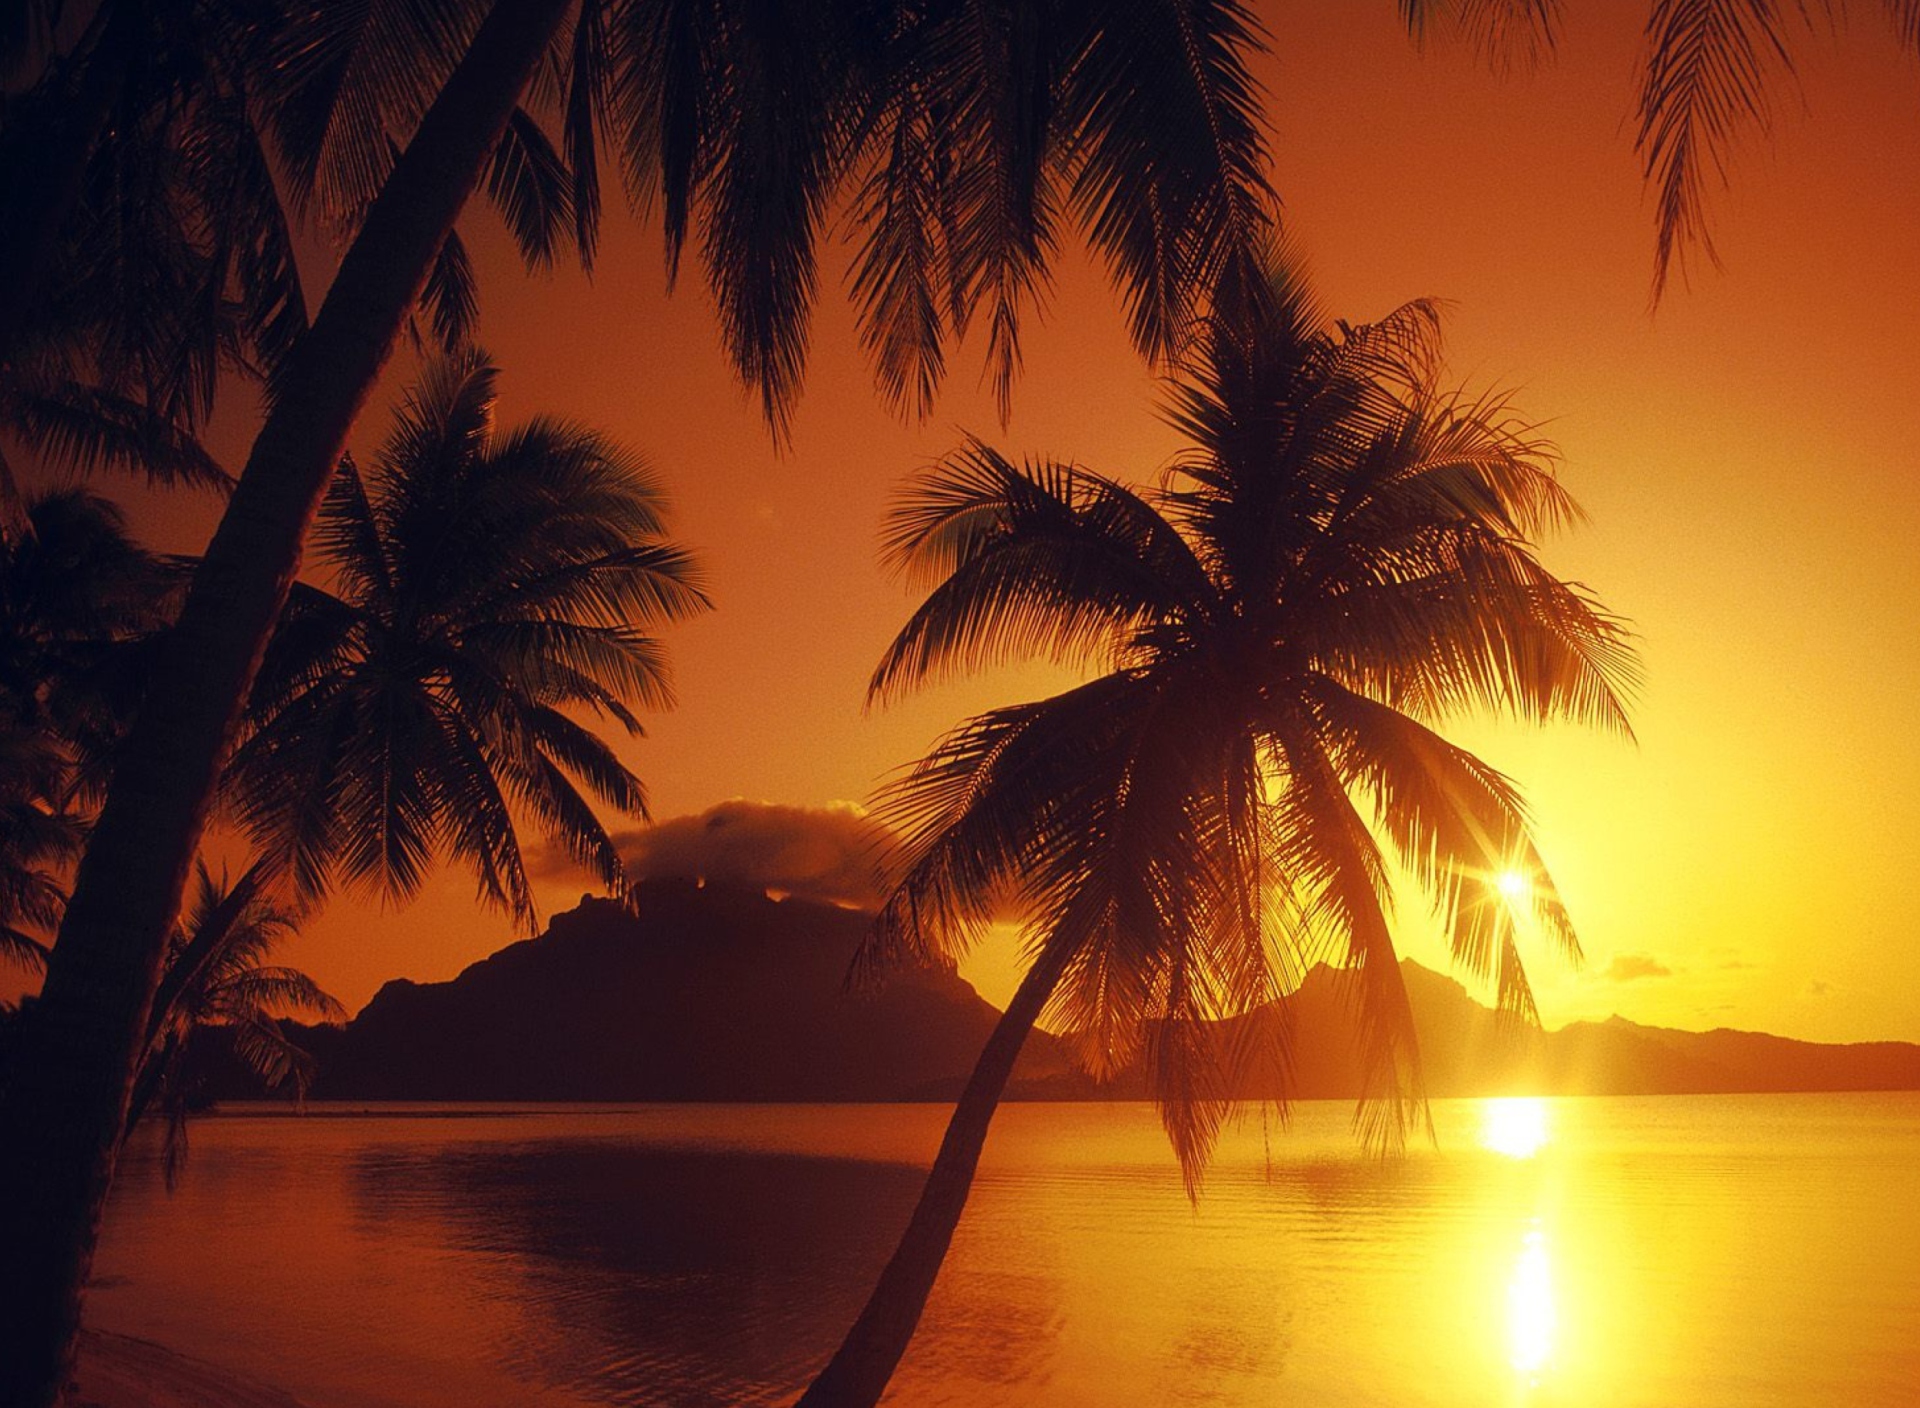 Sfondi Palms At Sunset 1920x1408